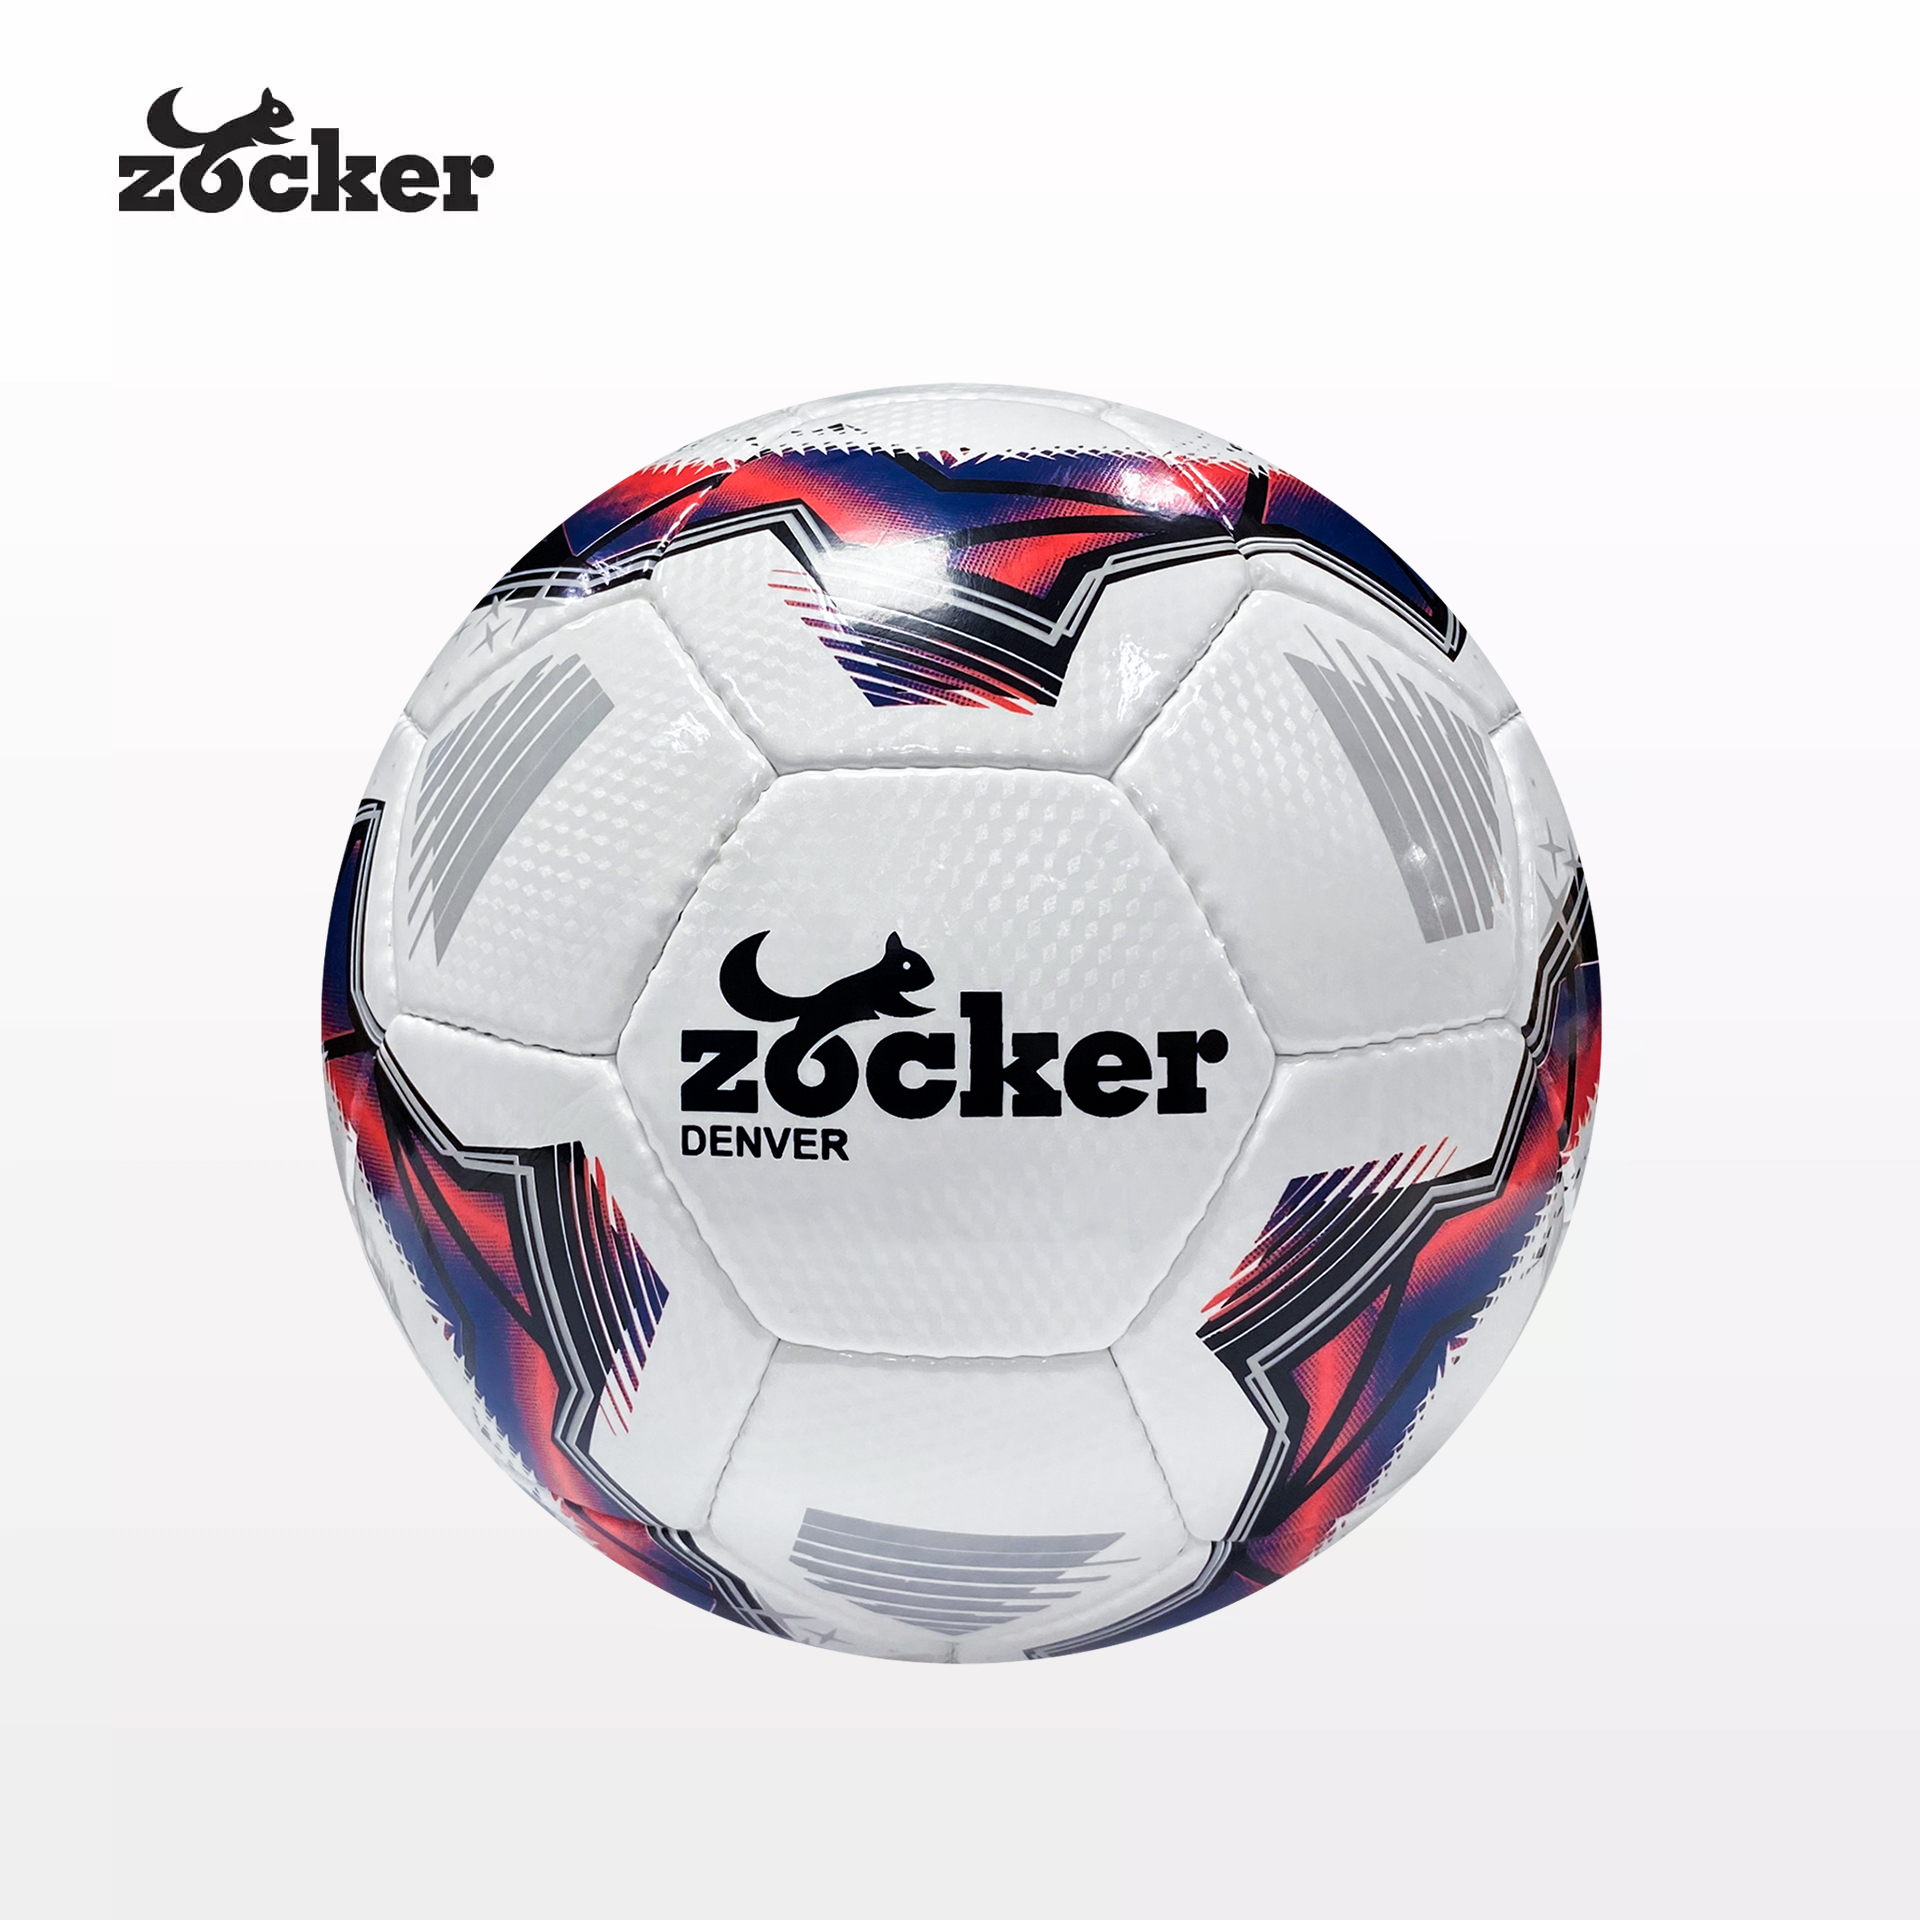 Quả bóng đá size 5 Zocker Denver ZK5-D2305